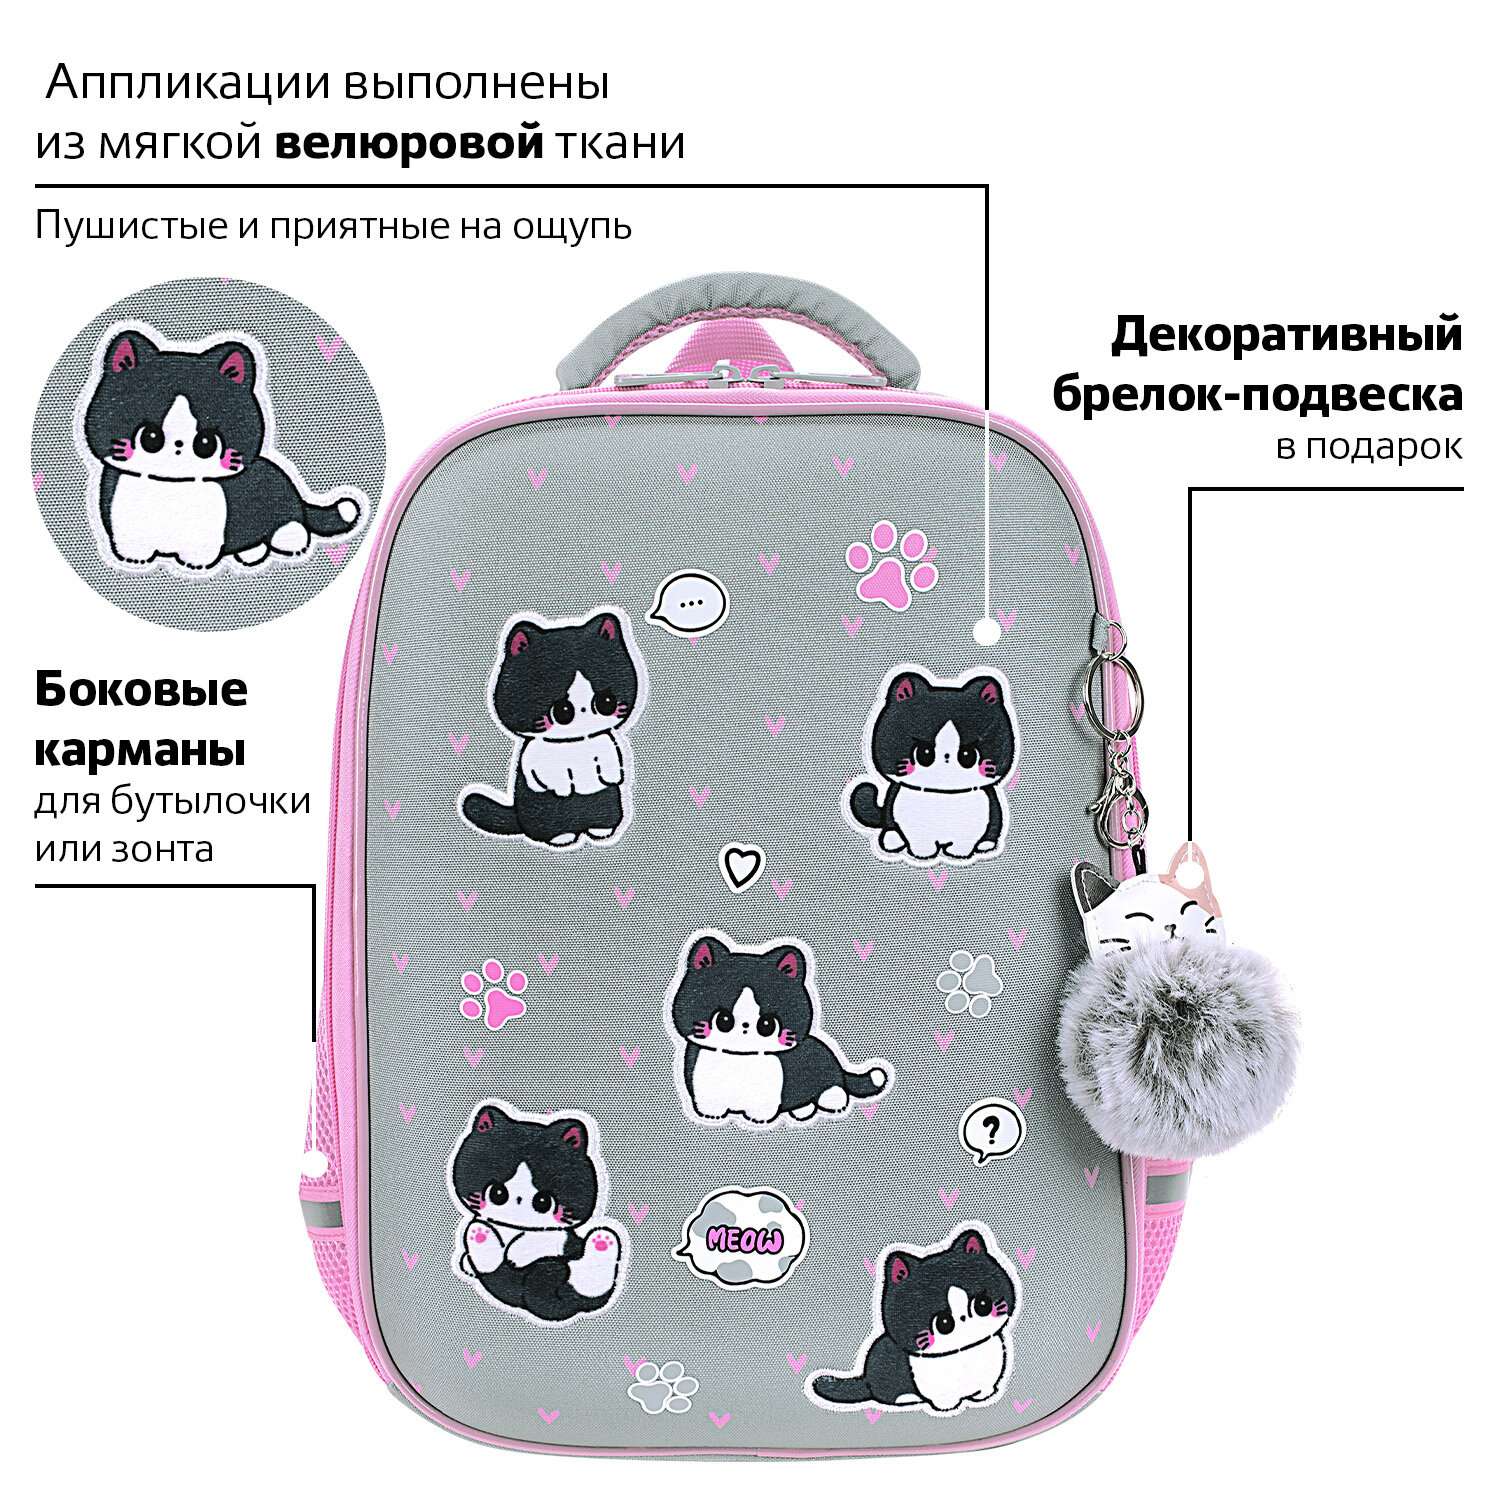 Рюкзак школьный Brauberg портфель детский ранец в 1 класс - фото 7